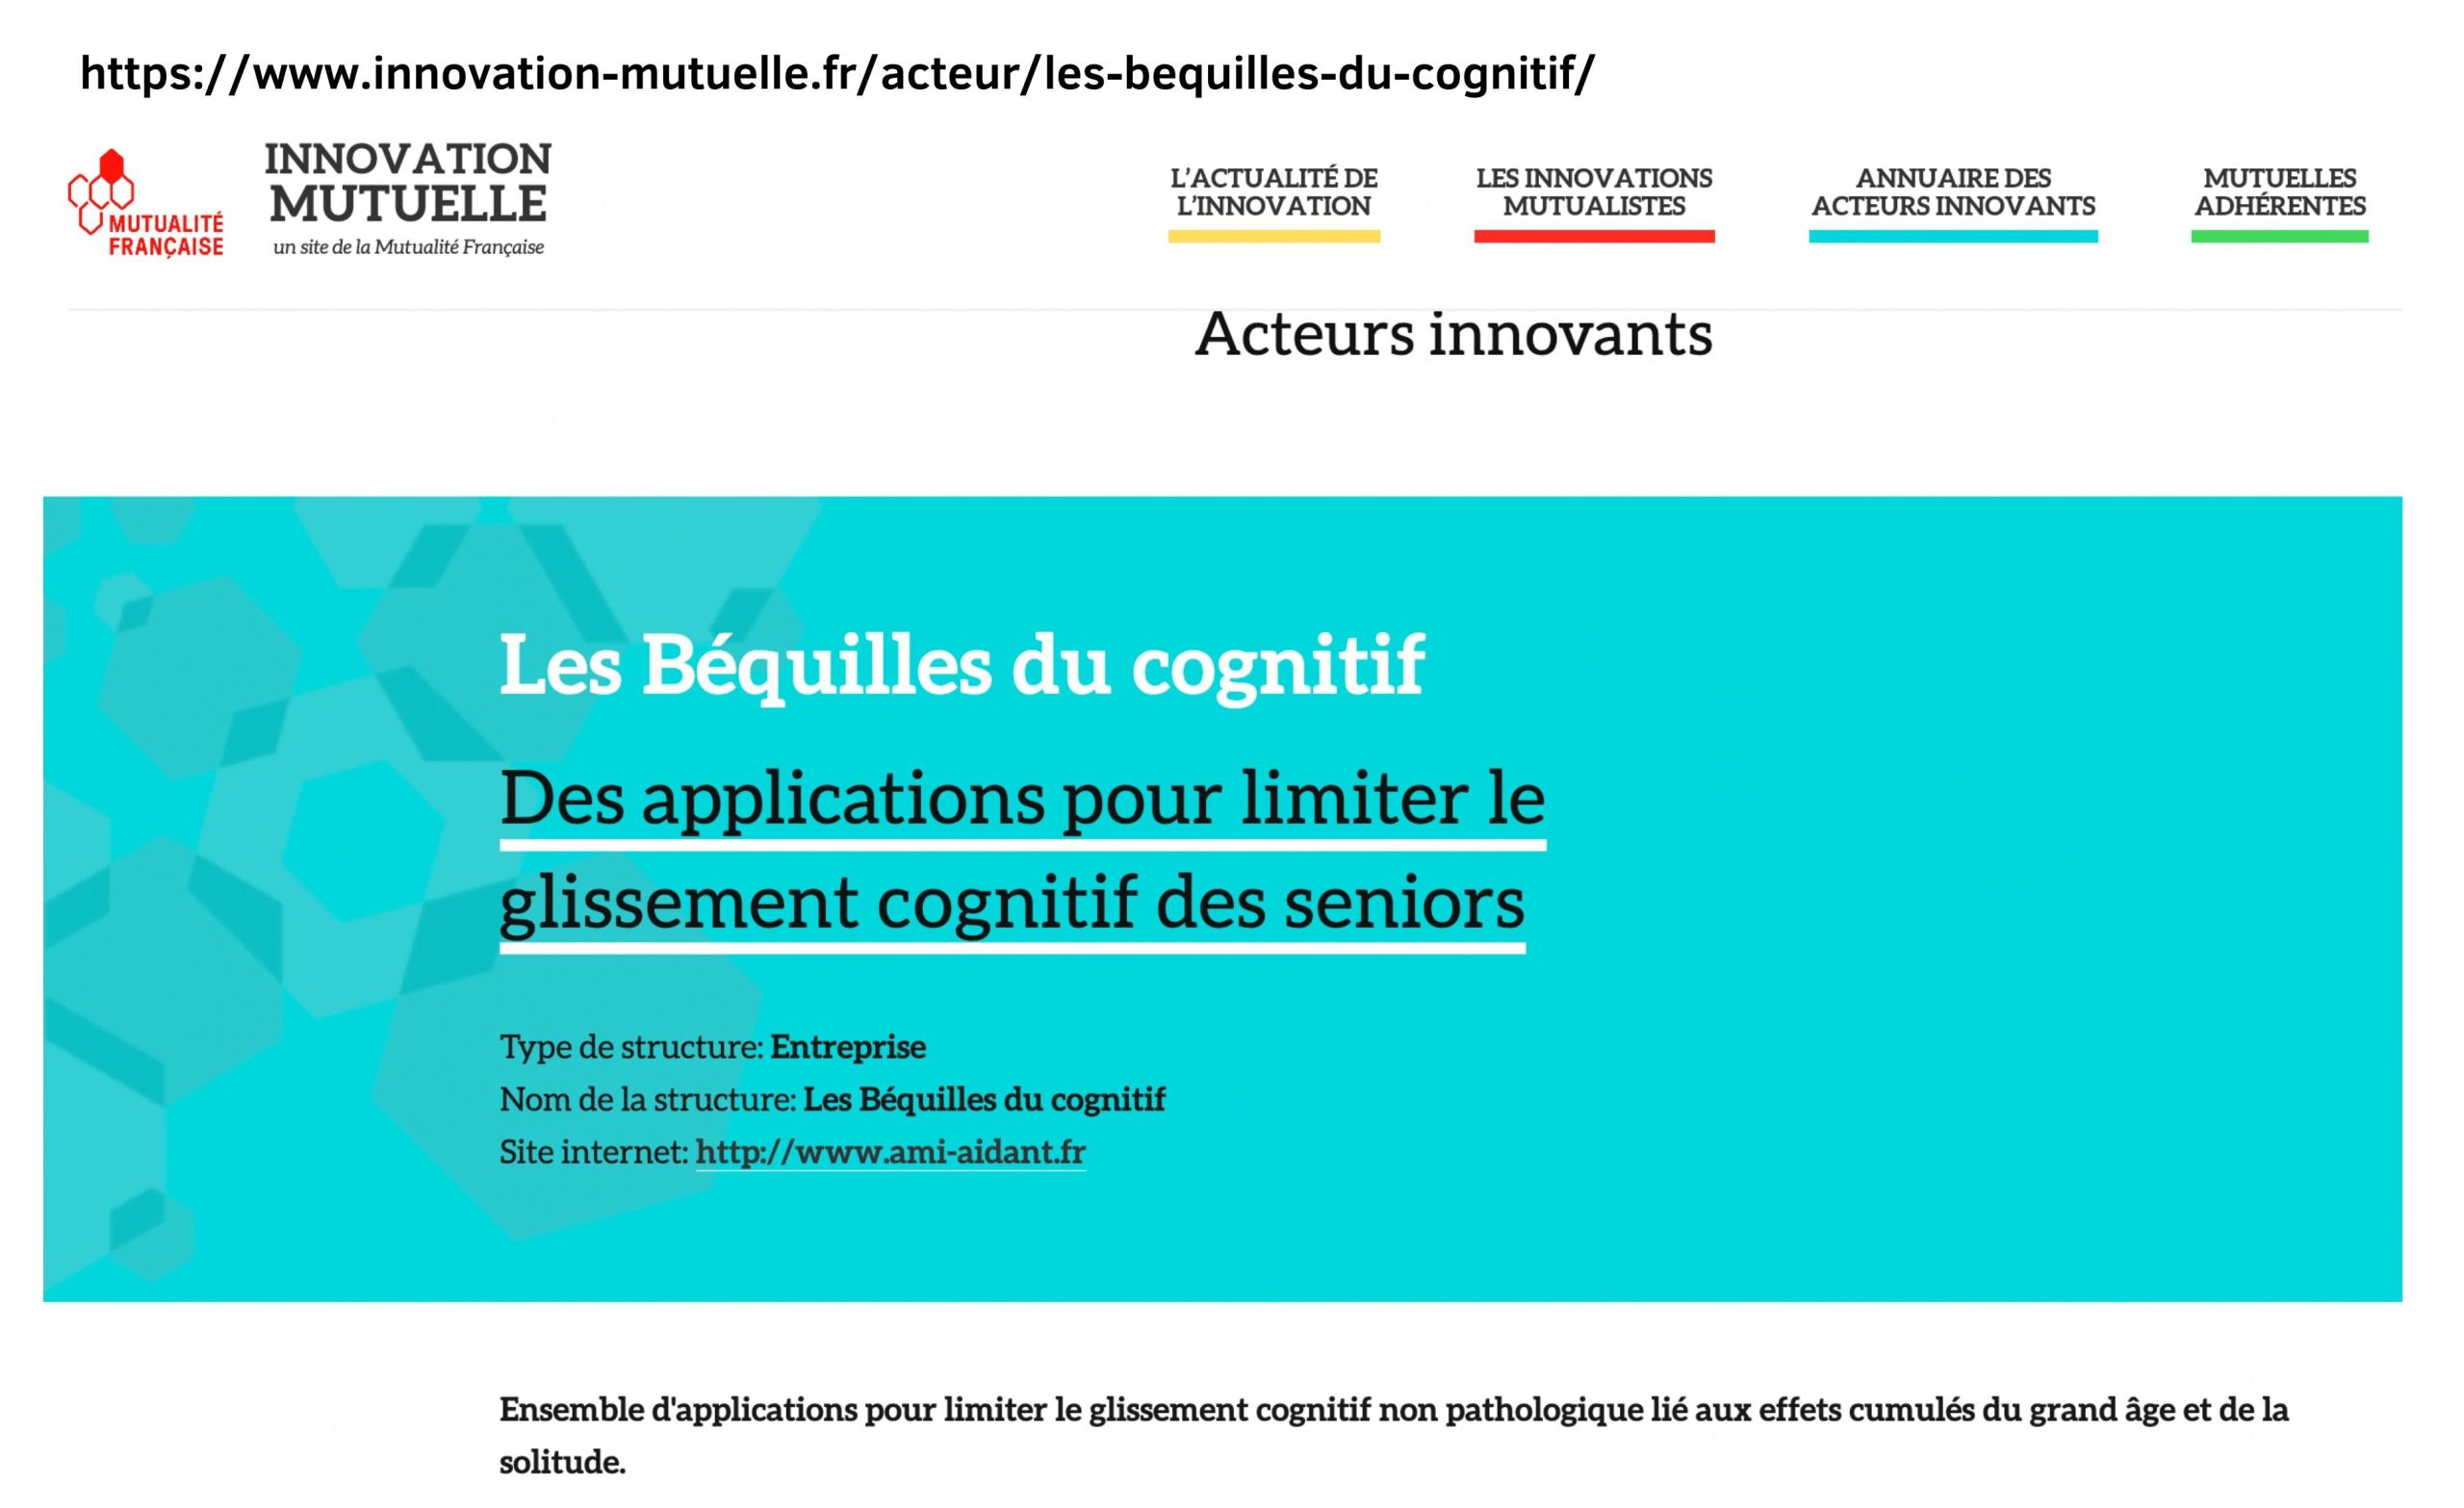 LBDC - Les béquilles du cognitifs crée en 2014 - ami-solution.eu